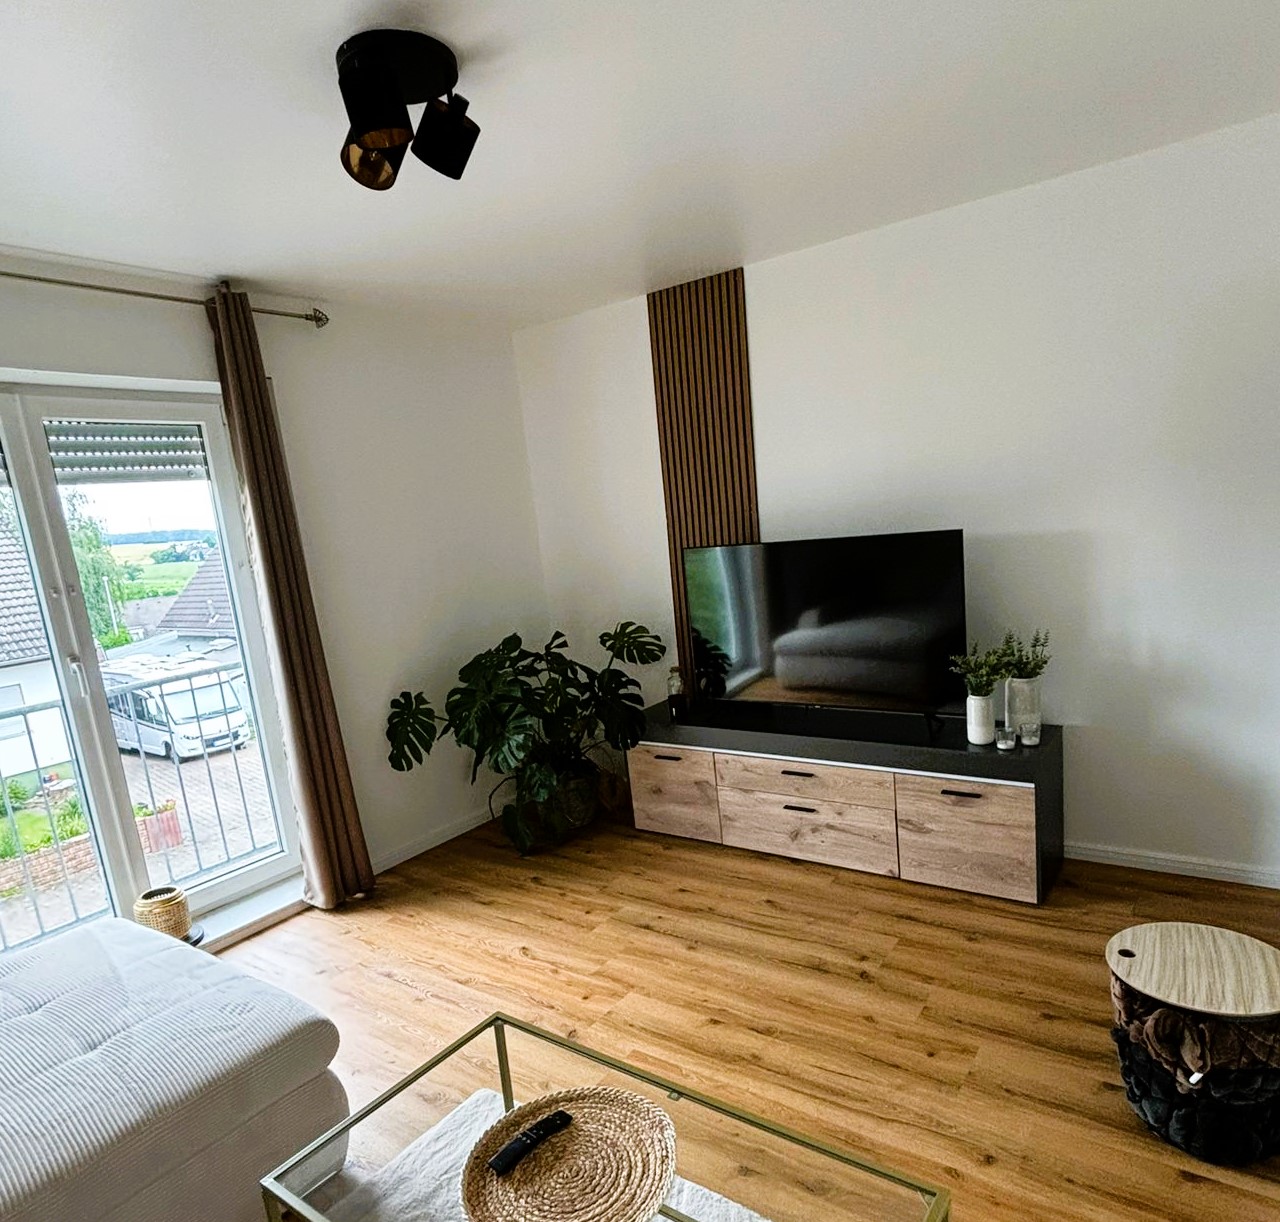 Moderne renovierte Wohnung mit Balkon und neuer Ausstattung in ruhiger Feldrandlage von Altendiez - Nähe Limburg